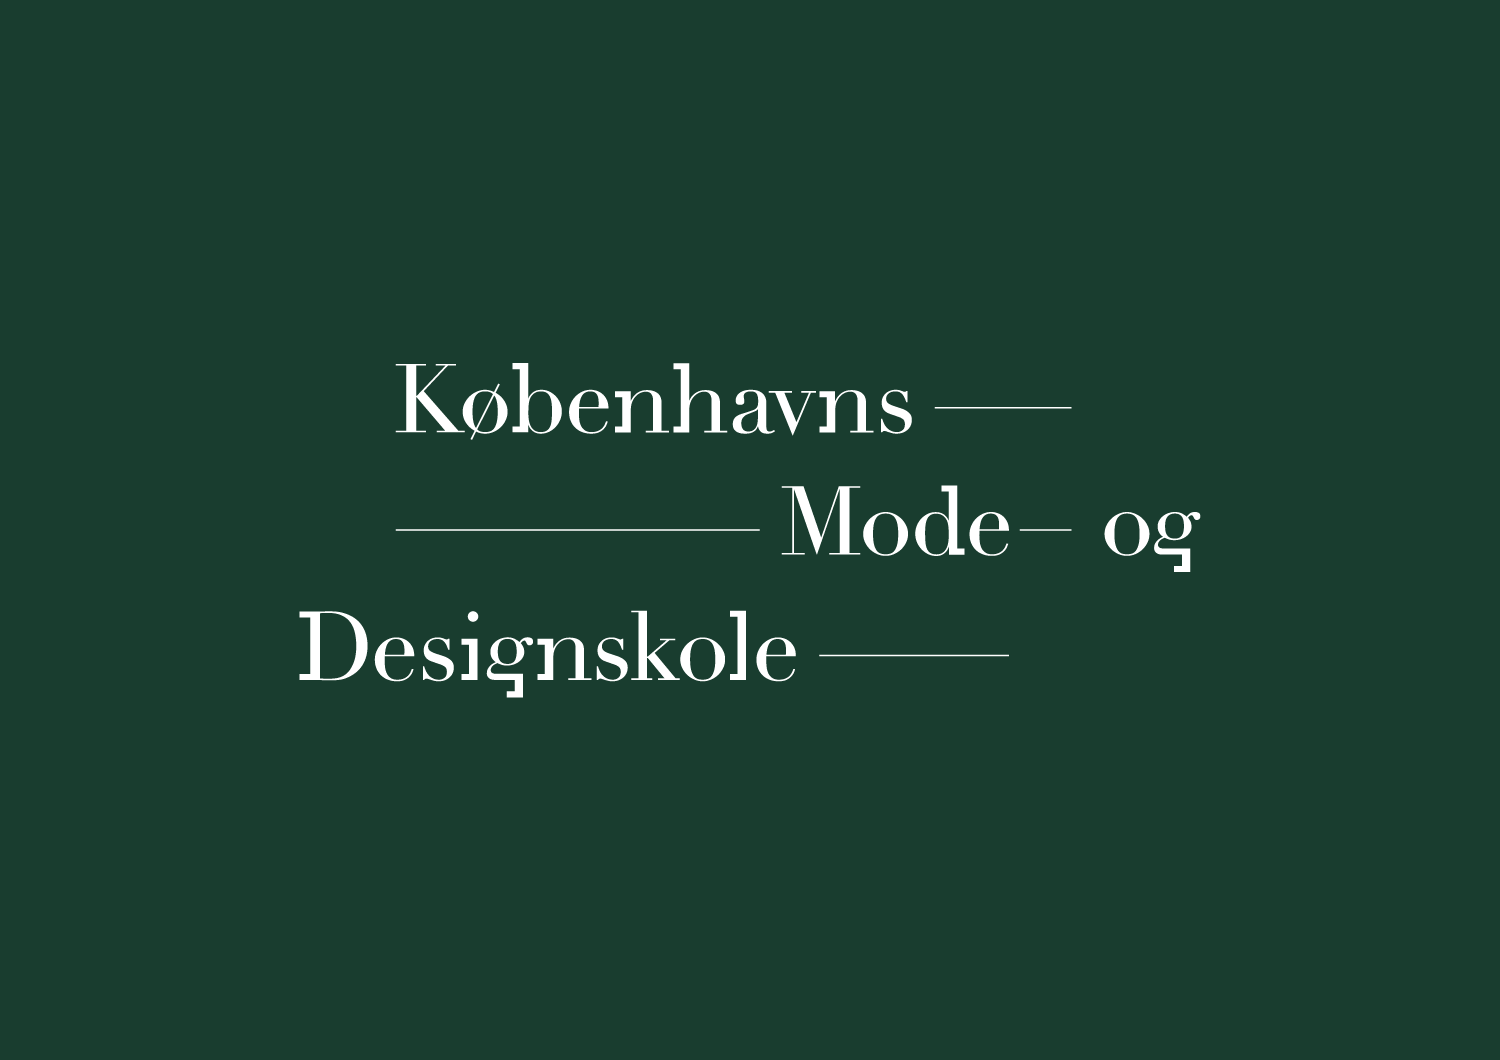 Logo-DK